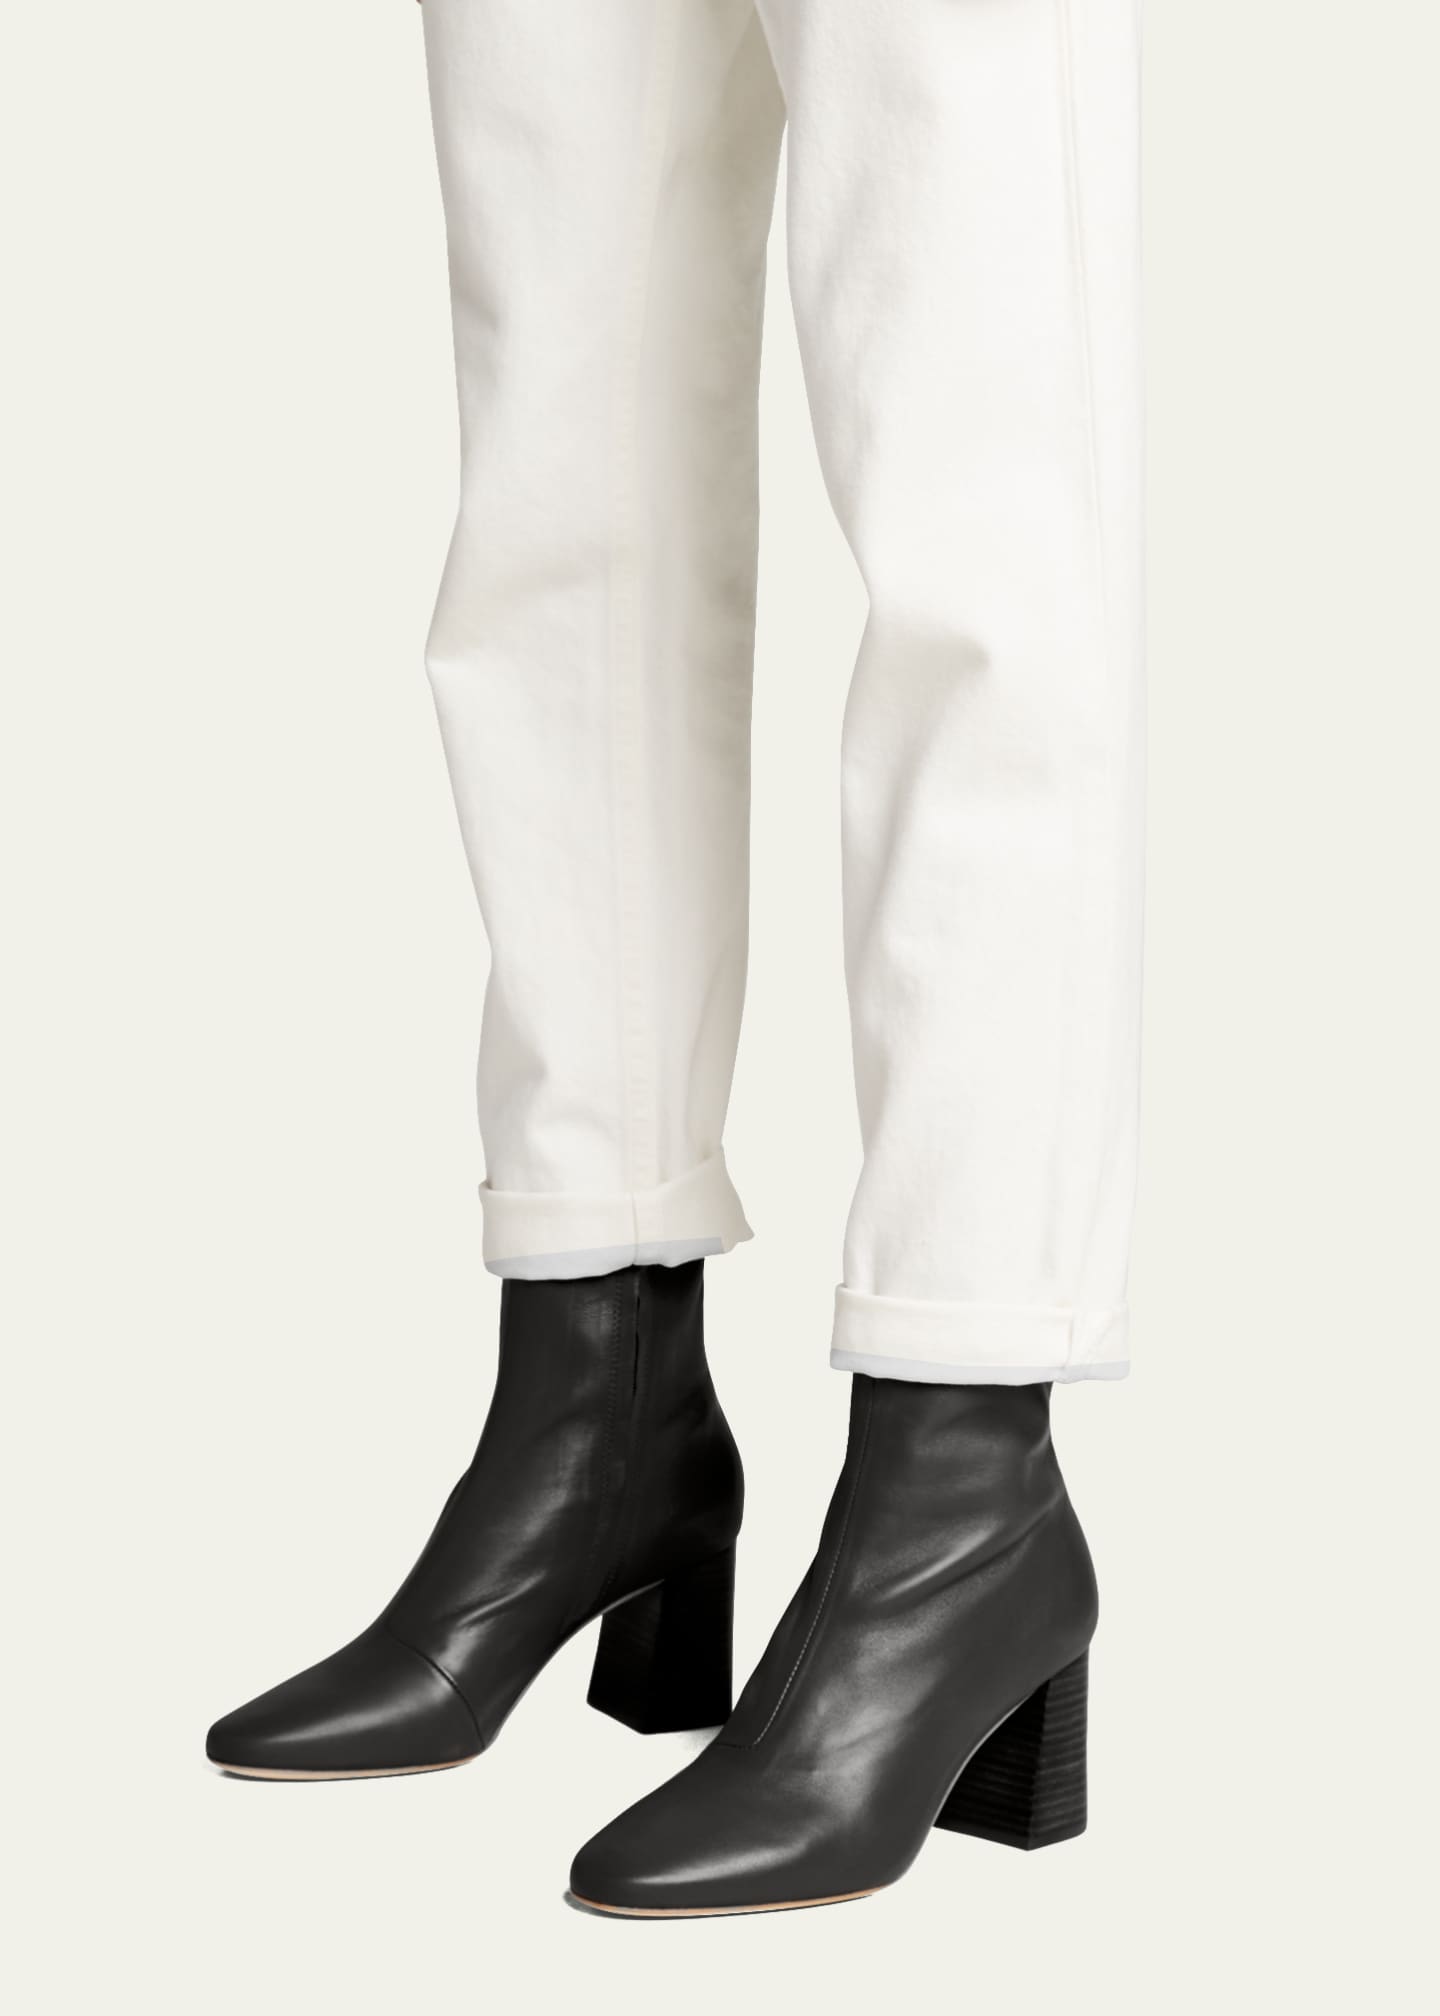 Loeffler Randall Elise Napa 75mm Slim Ankle Booties - Bergdorf Goodman